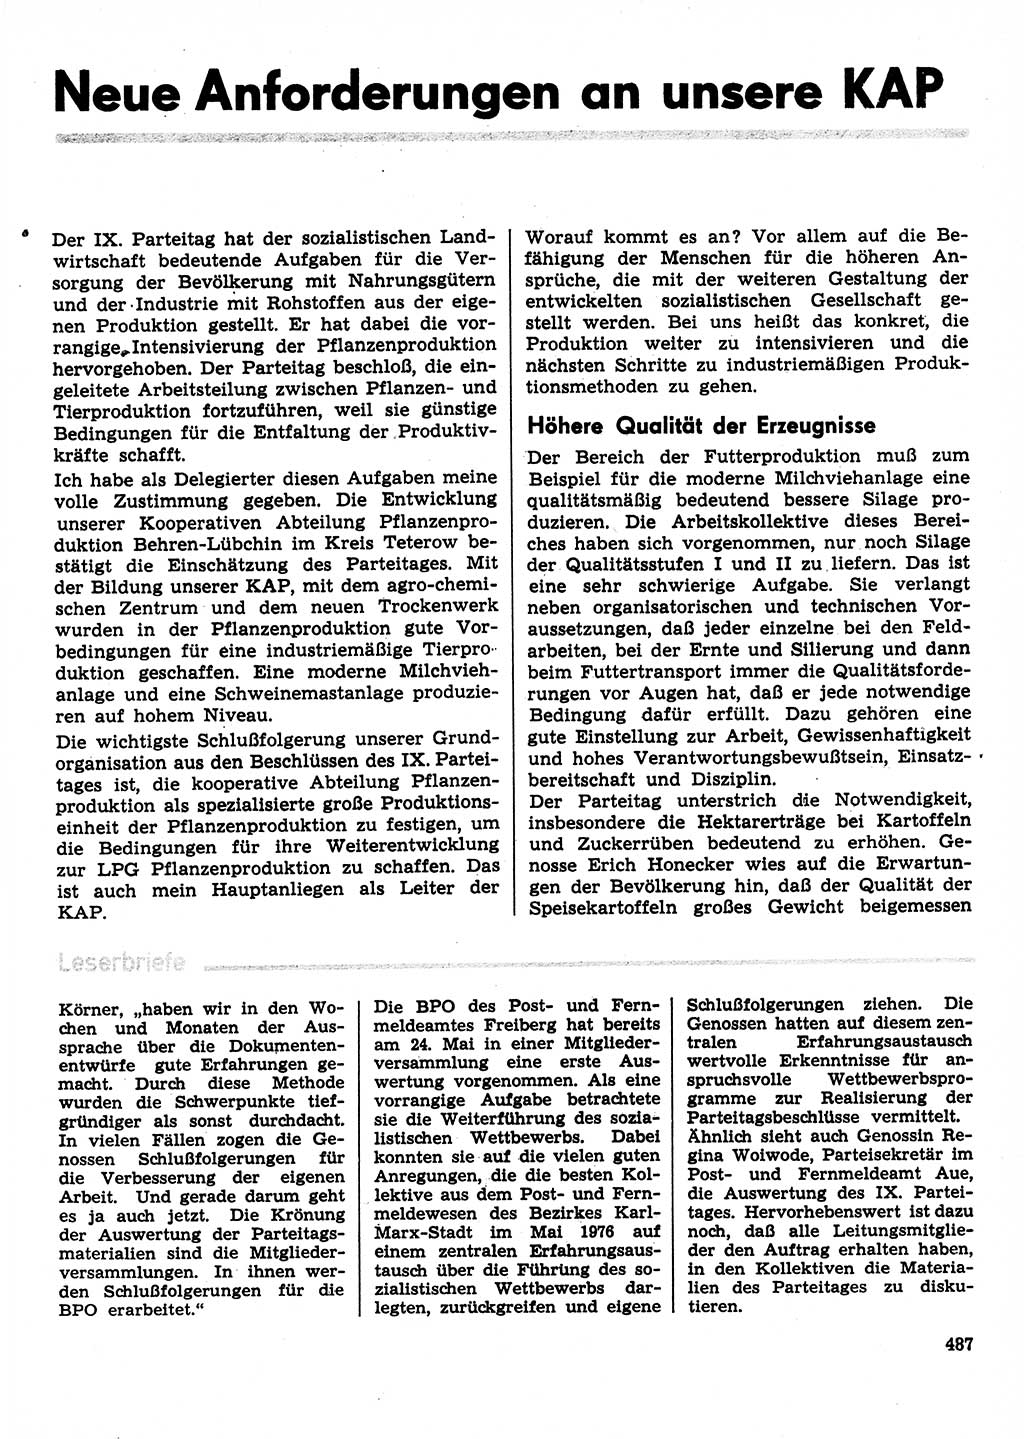 Neuer Weg (NW), Organ des Zentralkomitees (ZK) der SED (Sozialistische Einheitspartei Deutschlands) für Fragen des Parteilebens, 31. Jahrgang [Deutsche Demokratische Republik (DDR)] 1976, Seite 487 (NW ZK SED DDR 1976, S. 487)